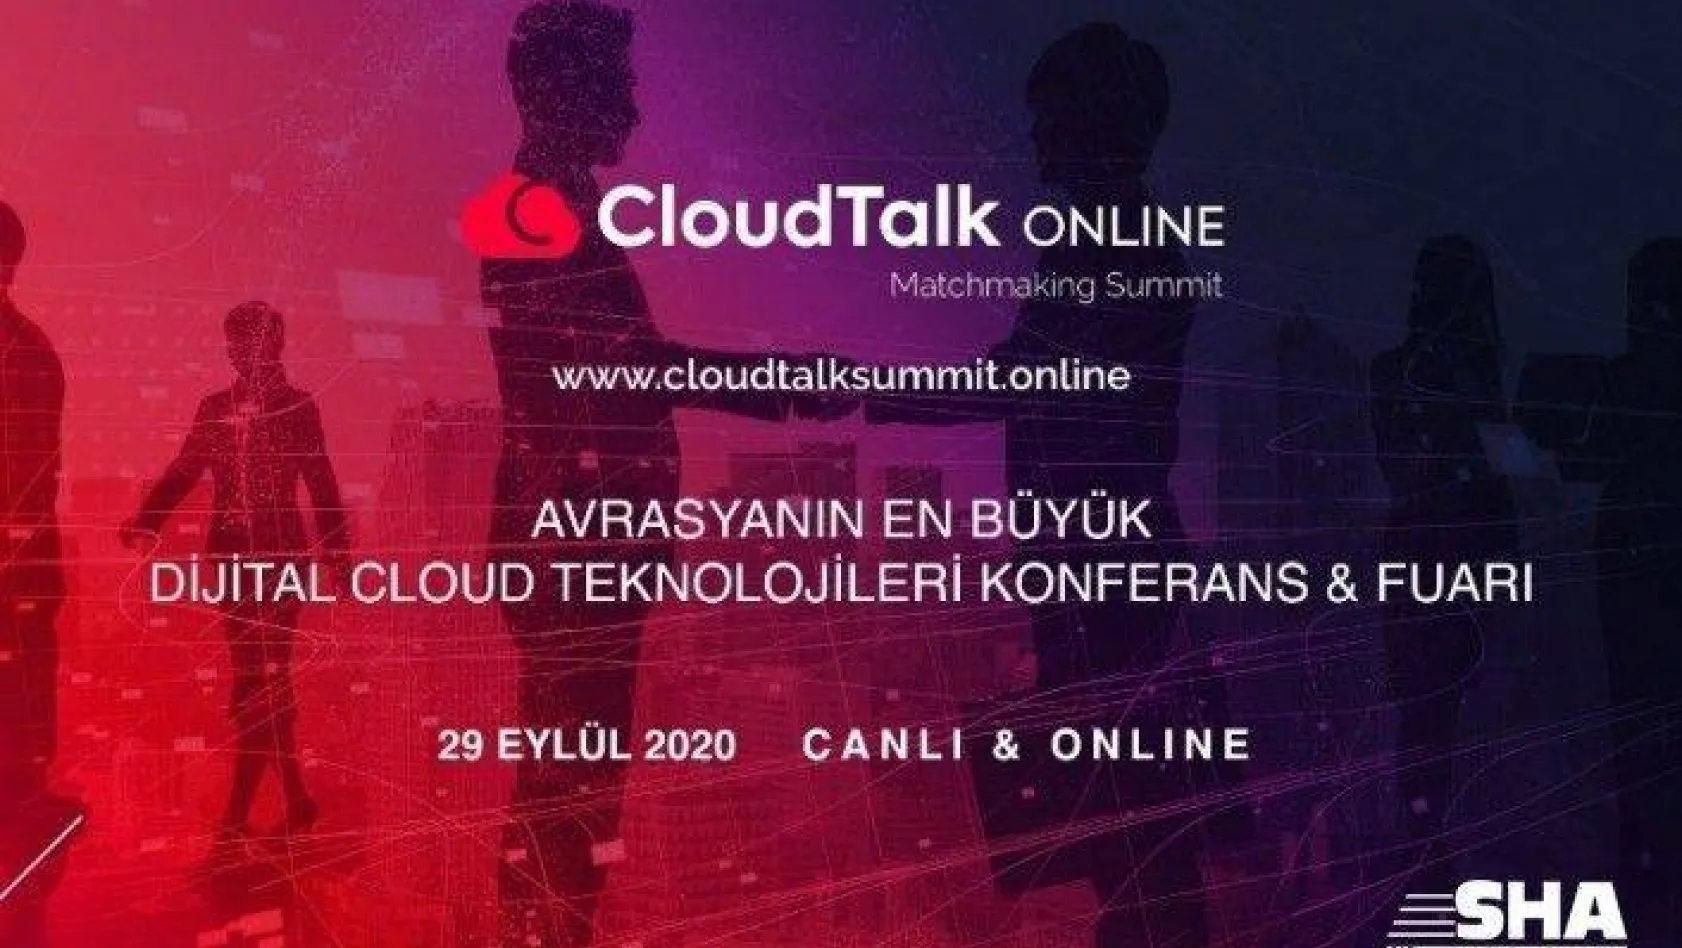 Avrasya'nın IT profesyonelleri CloudTalk Online'da bir araya geliyor